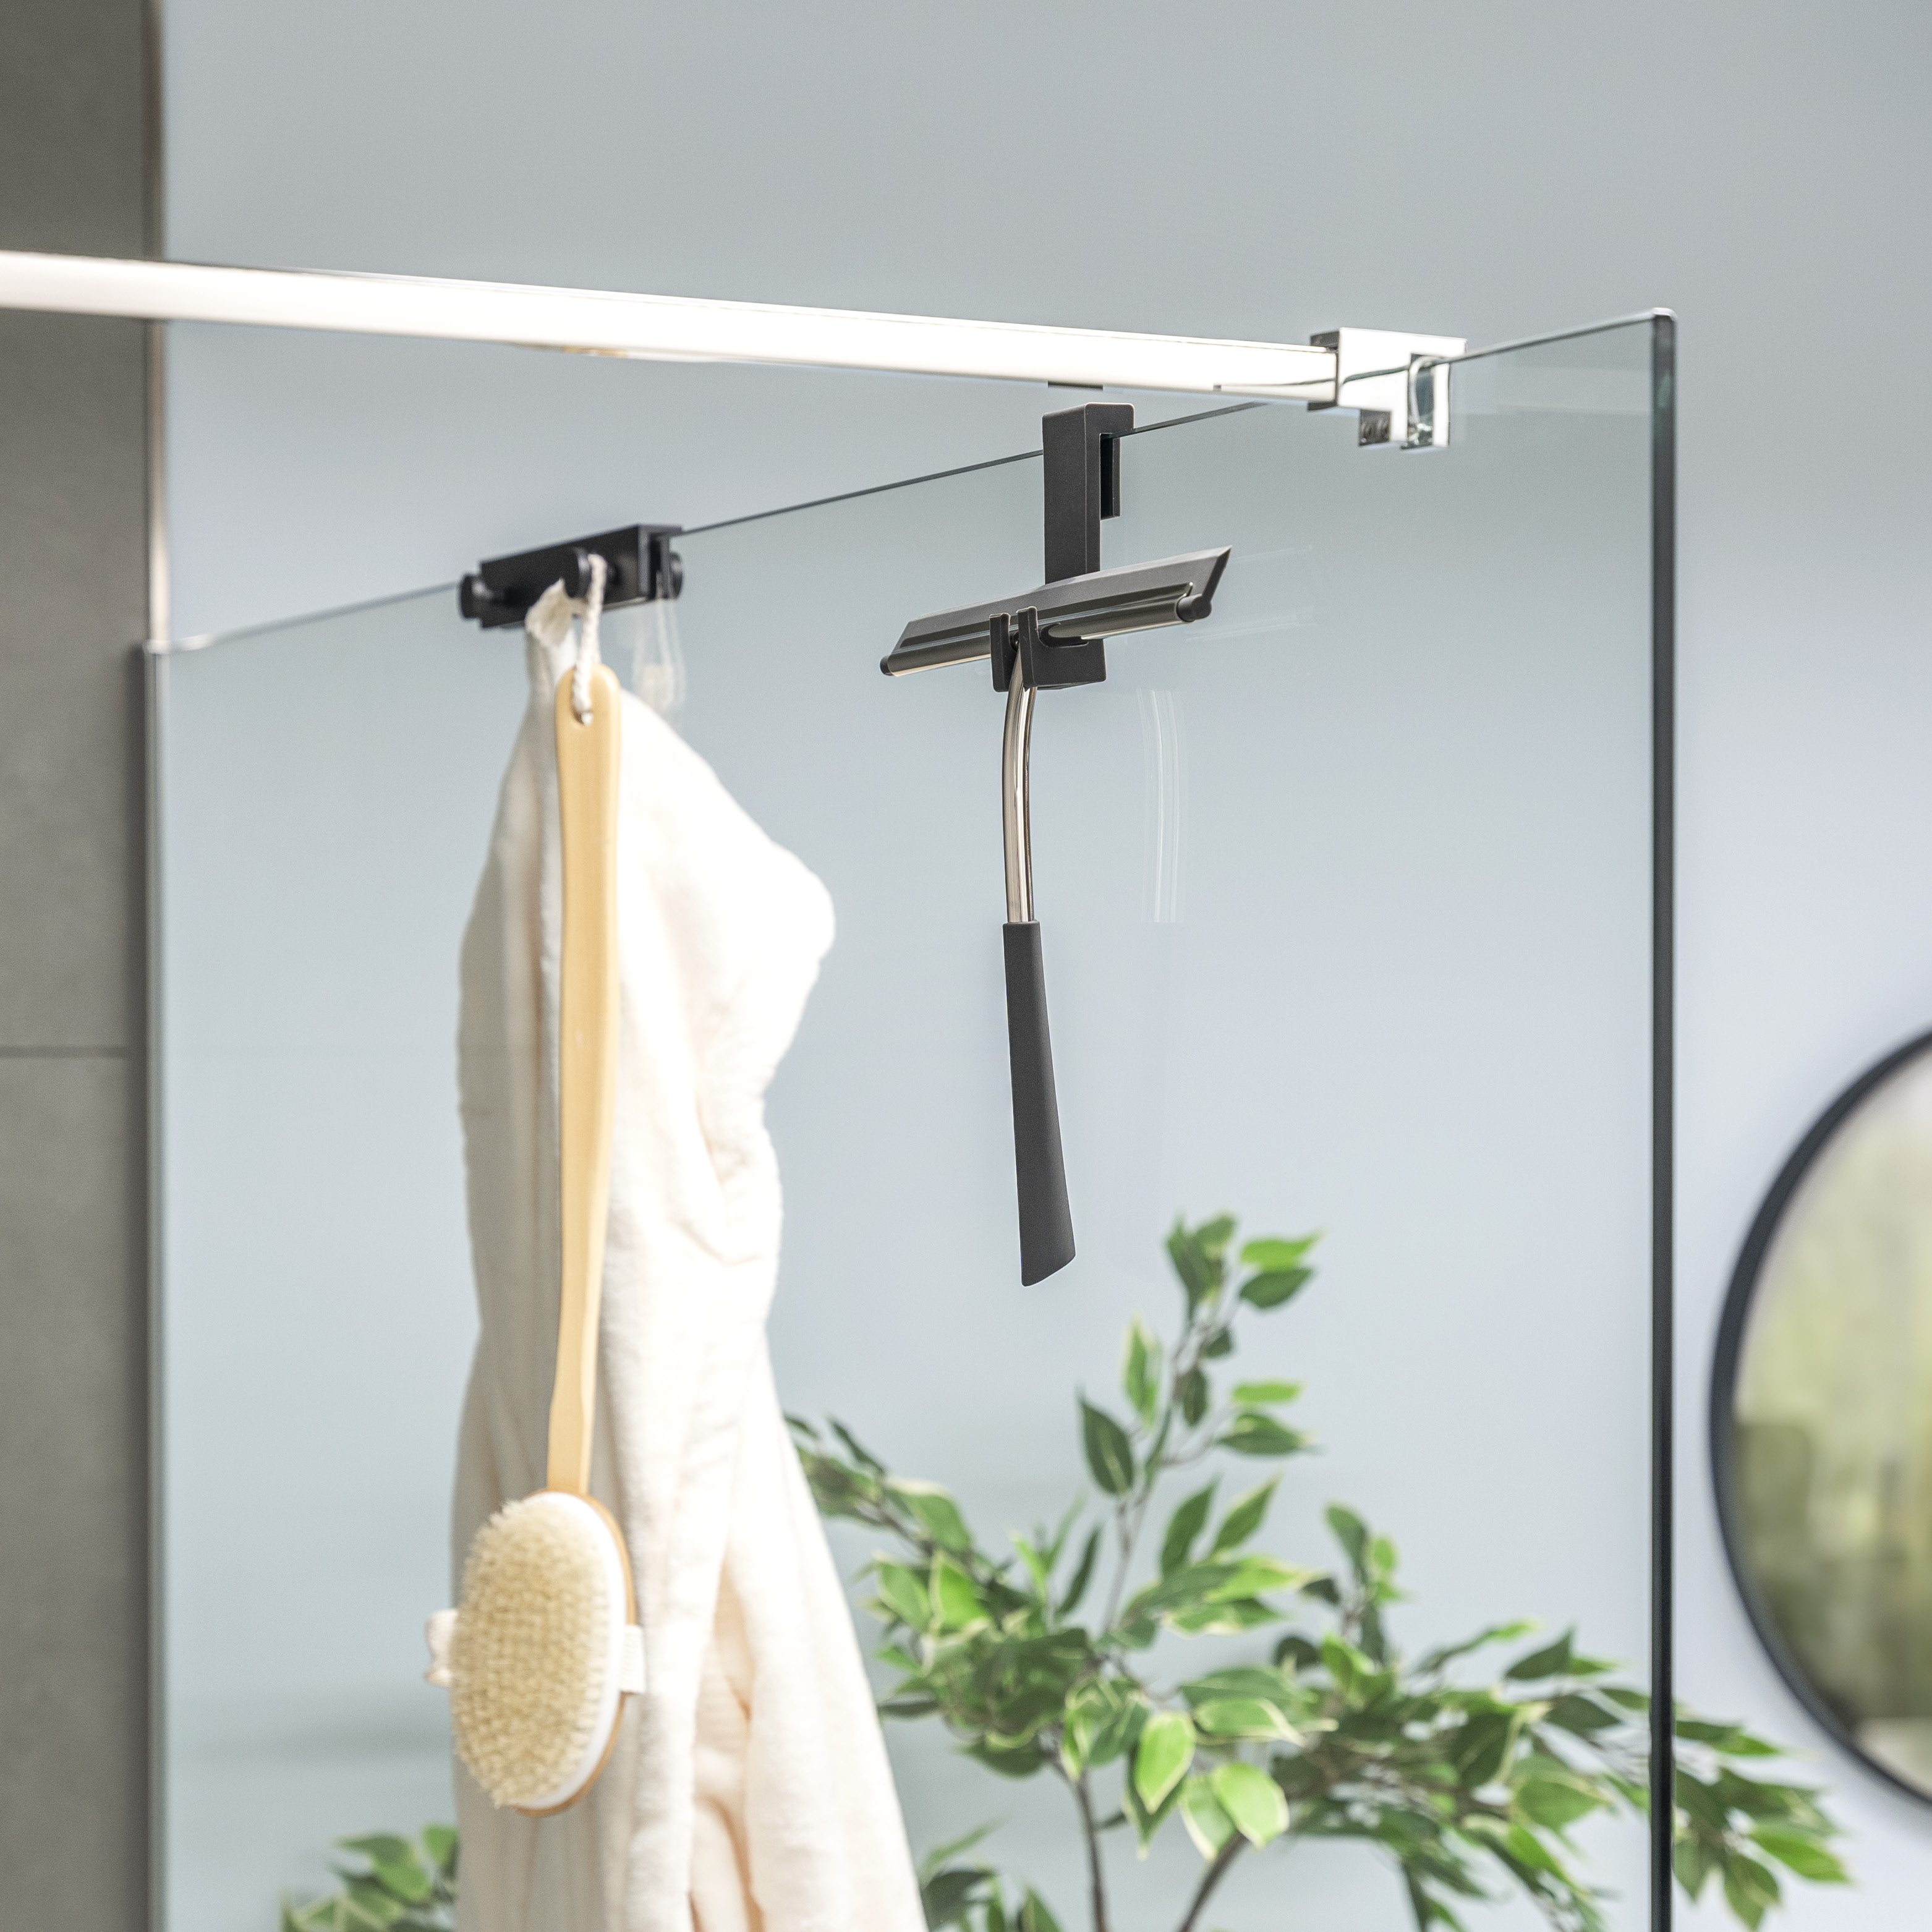 Duschabzieher mit Halterung zum Einhängen an Duschwand, aus Edelstahl und Silikon